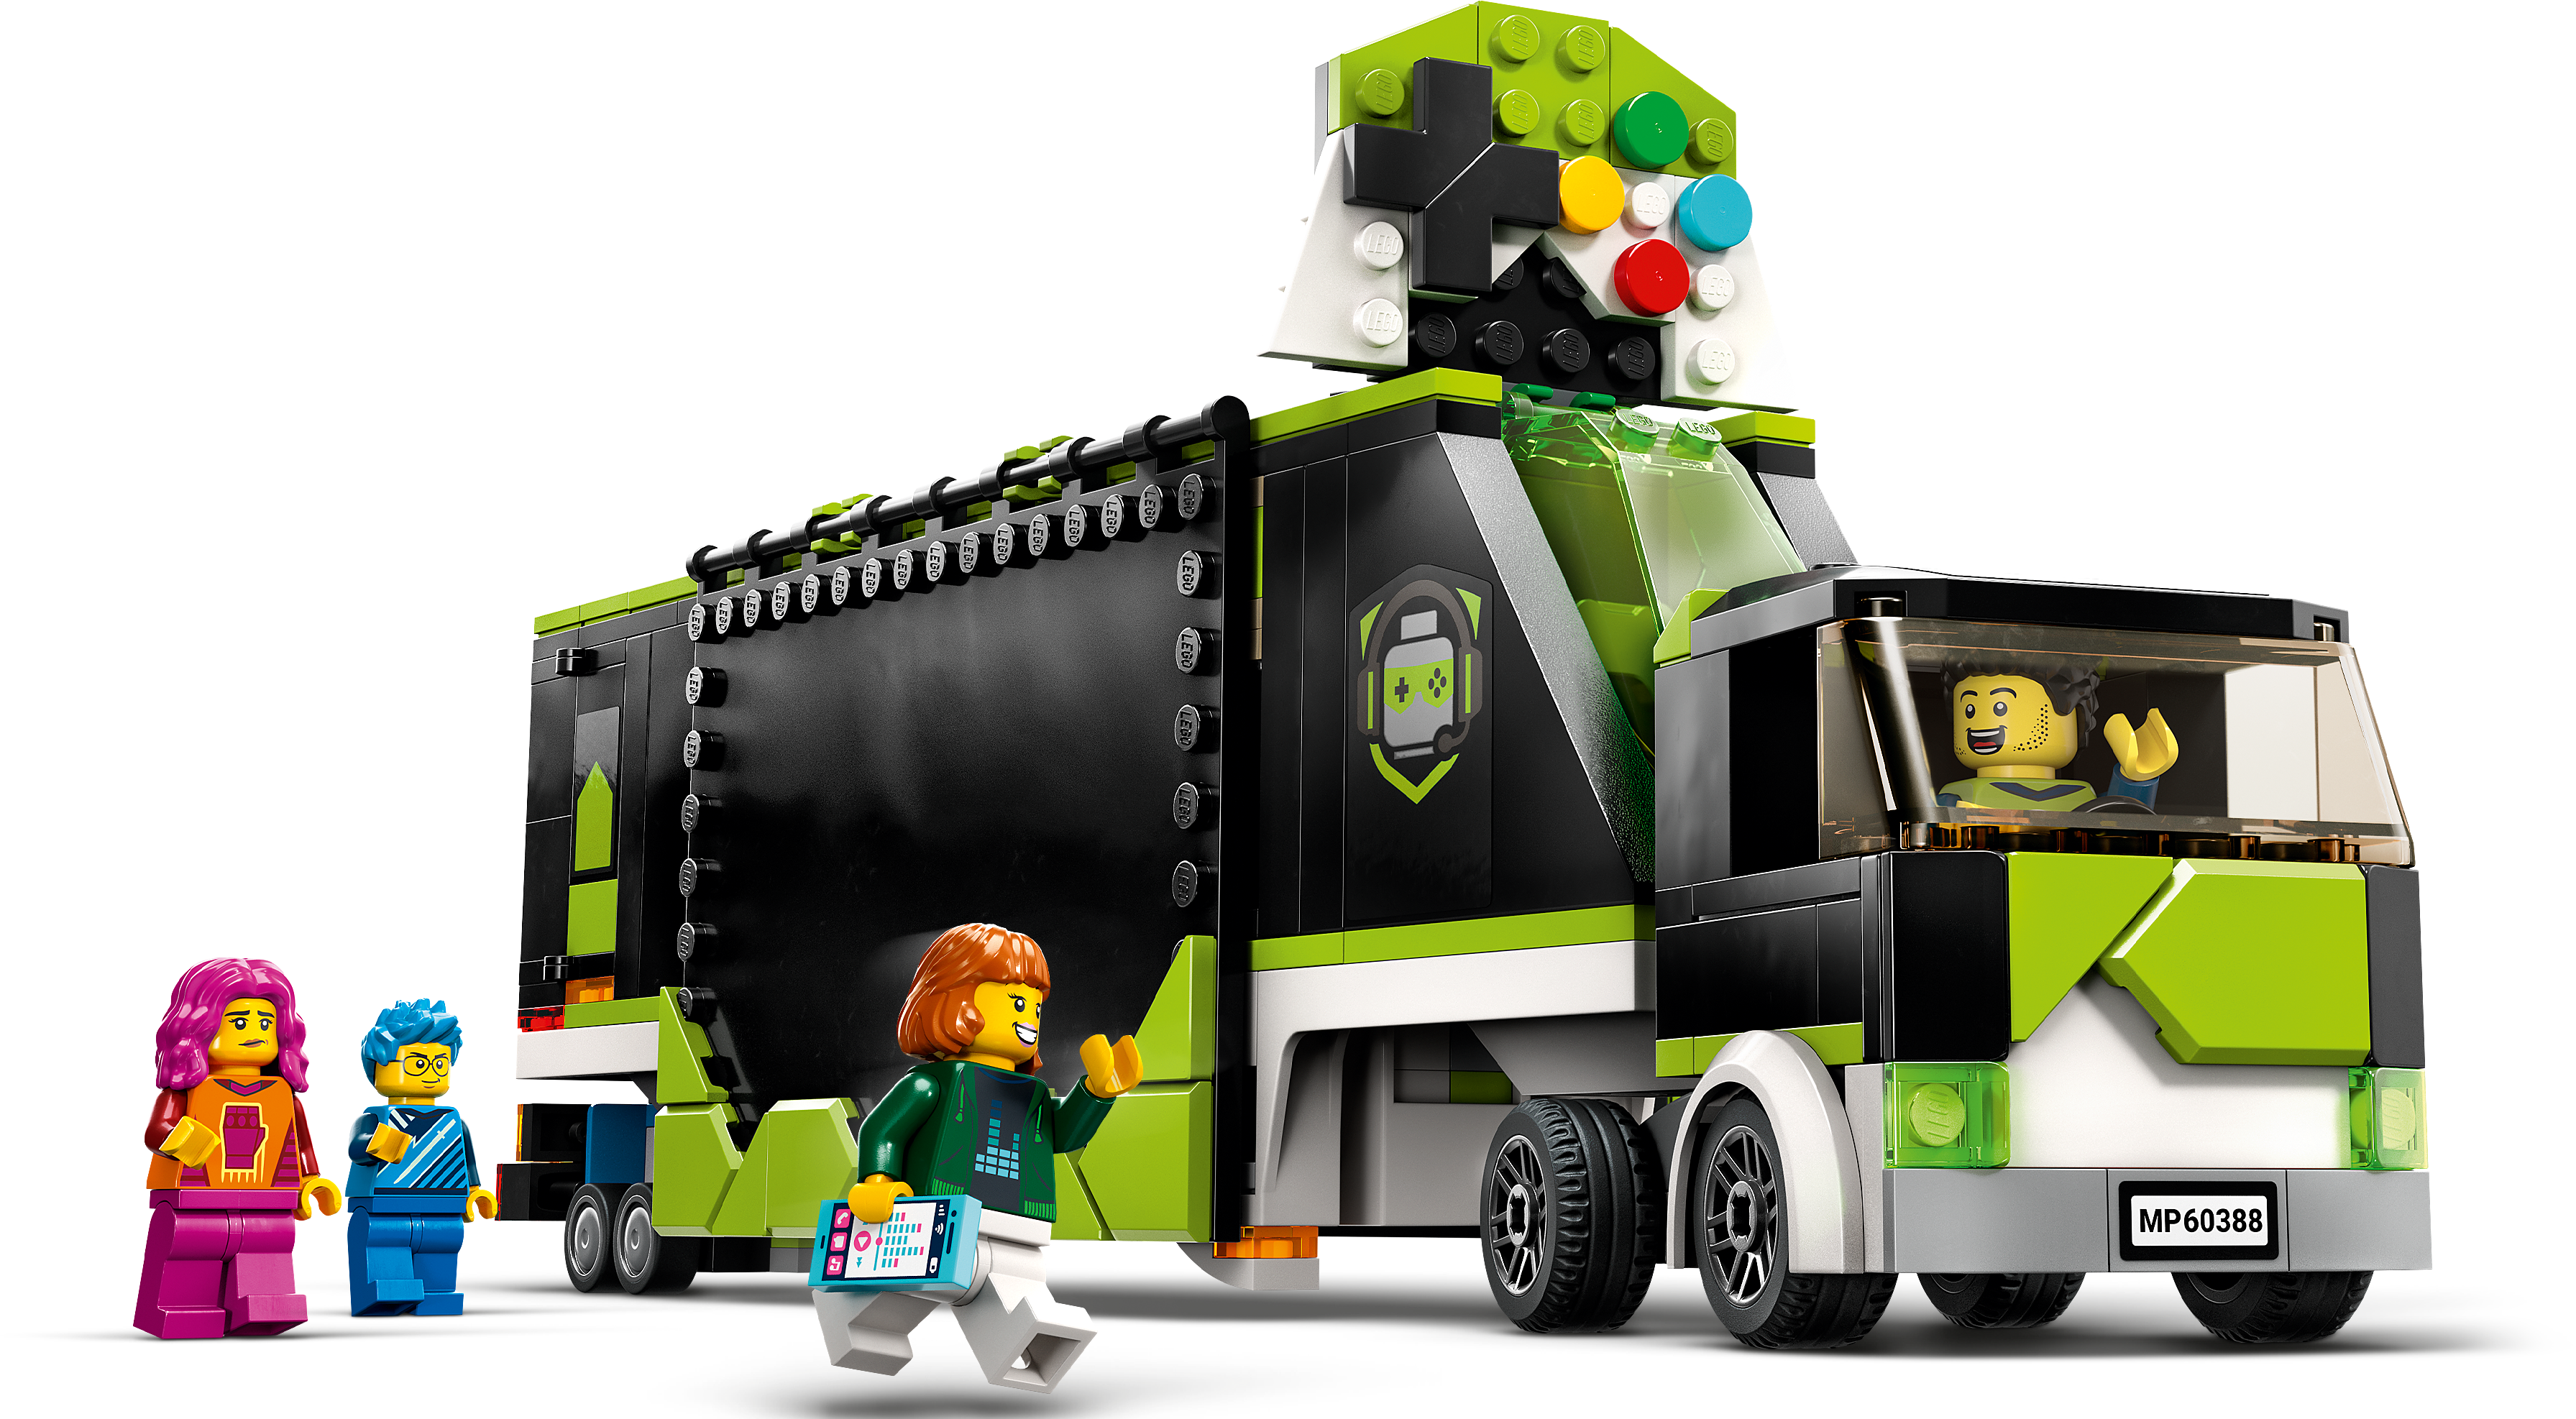 Jogos - LEGO.com para crianças